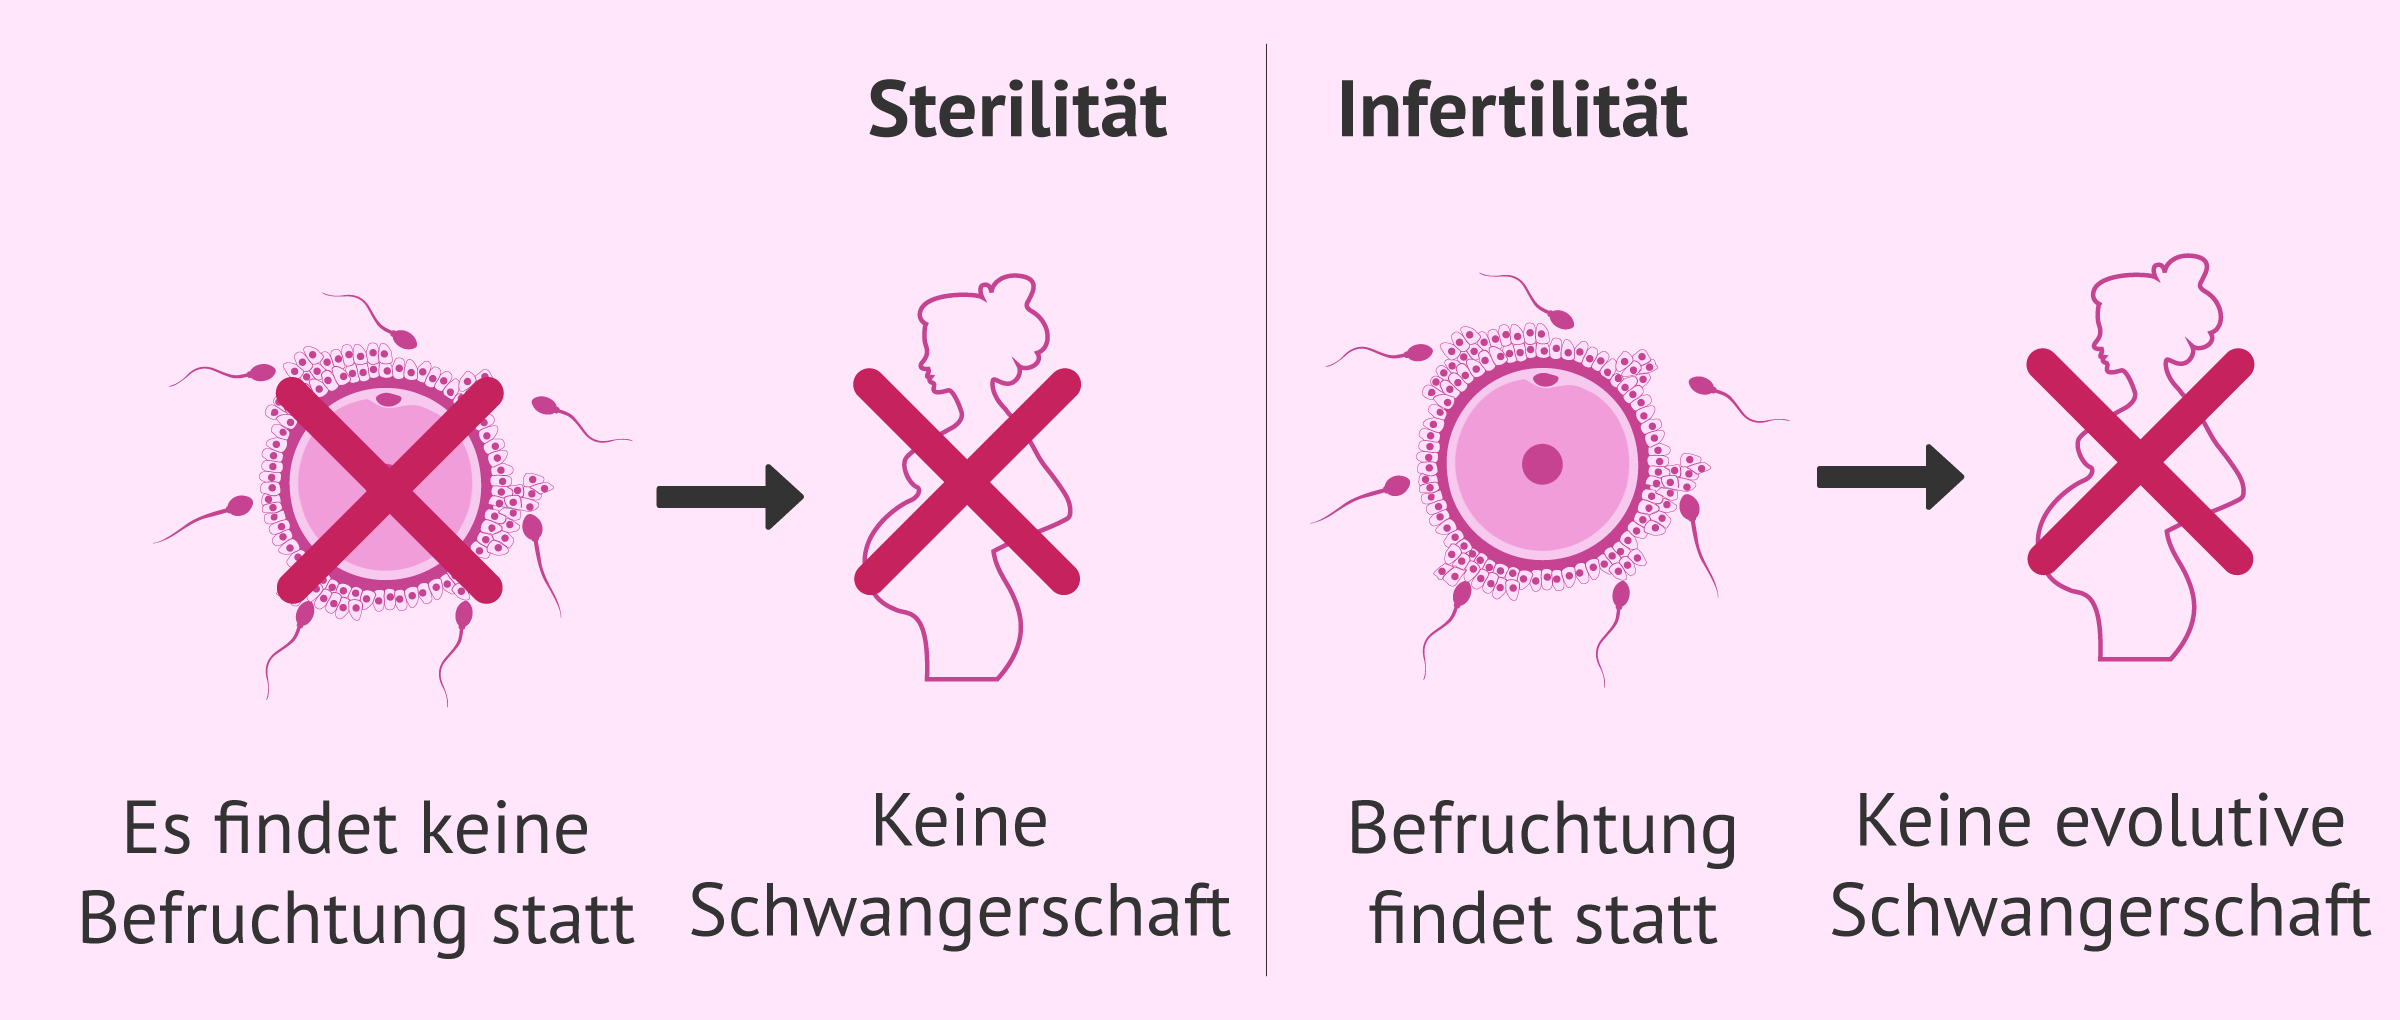 Sterilität und Infertilität